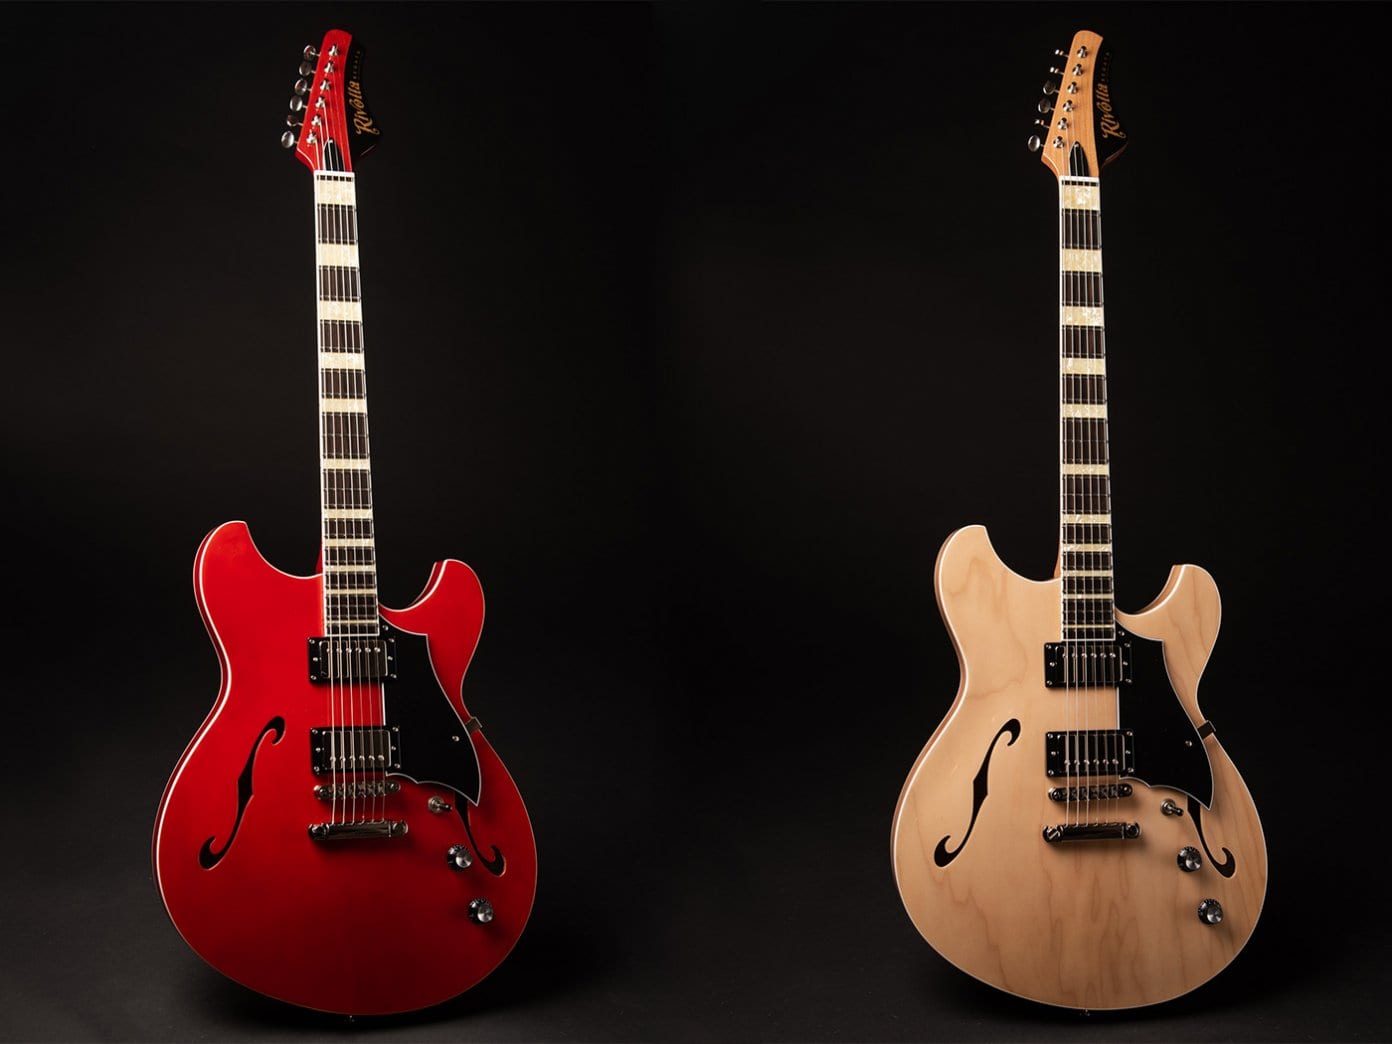 Rivolta Guitars Regata II new semi-hollow offset model